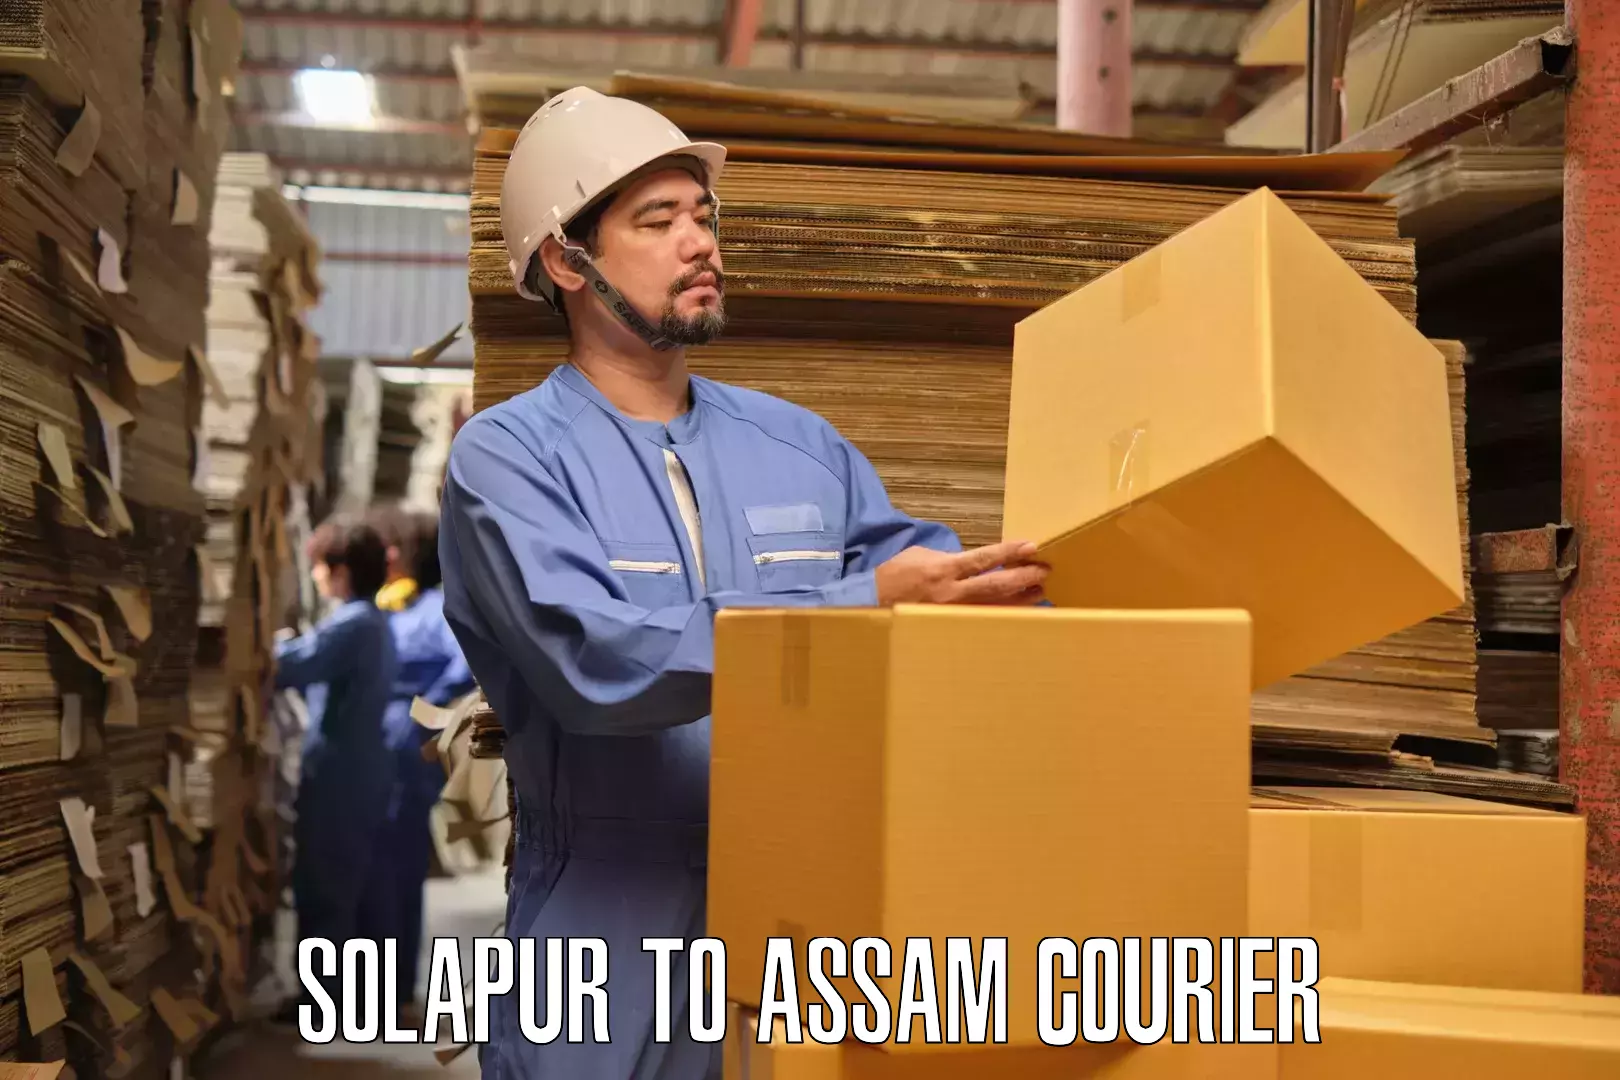 Furniture delivery service Solapur to Bokajan